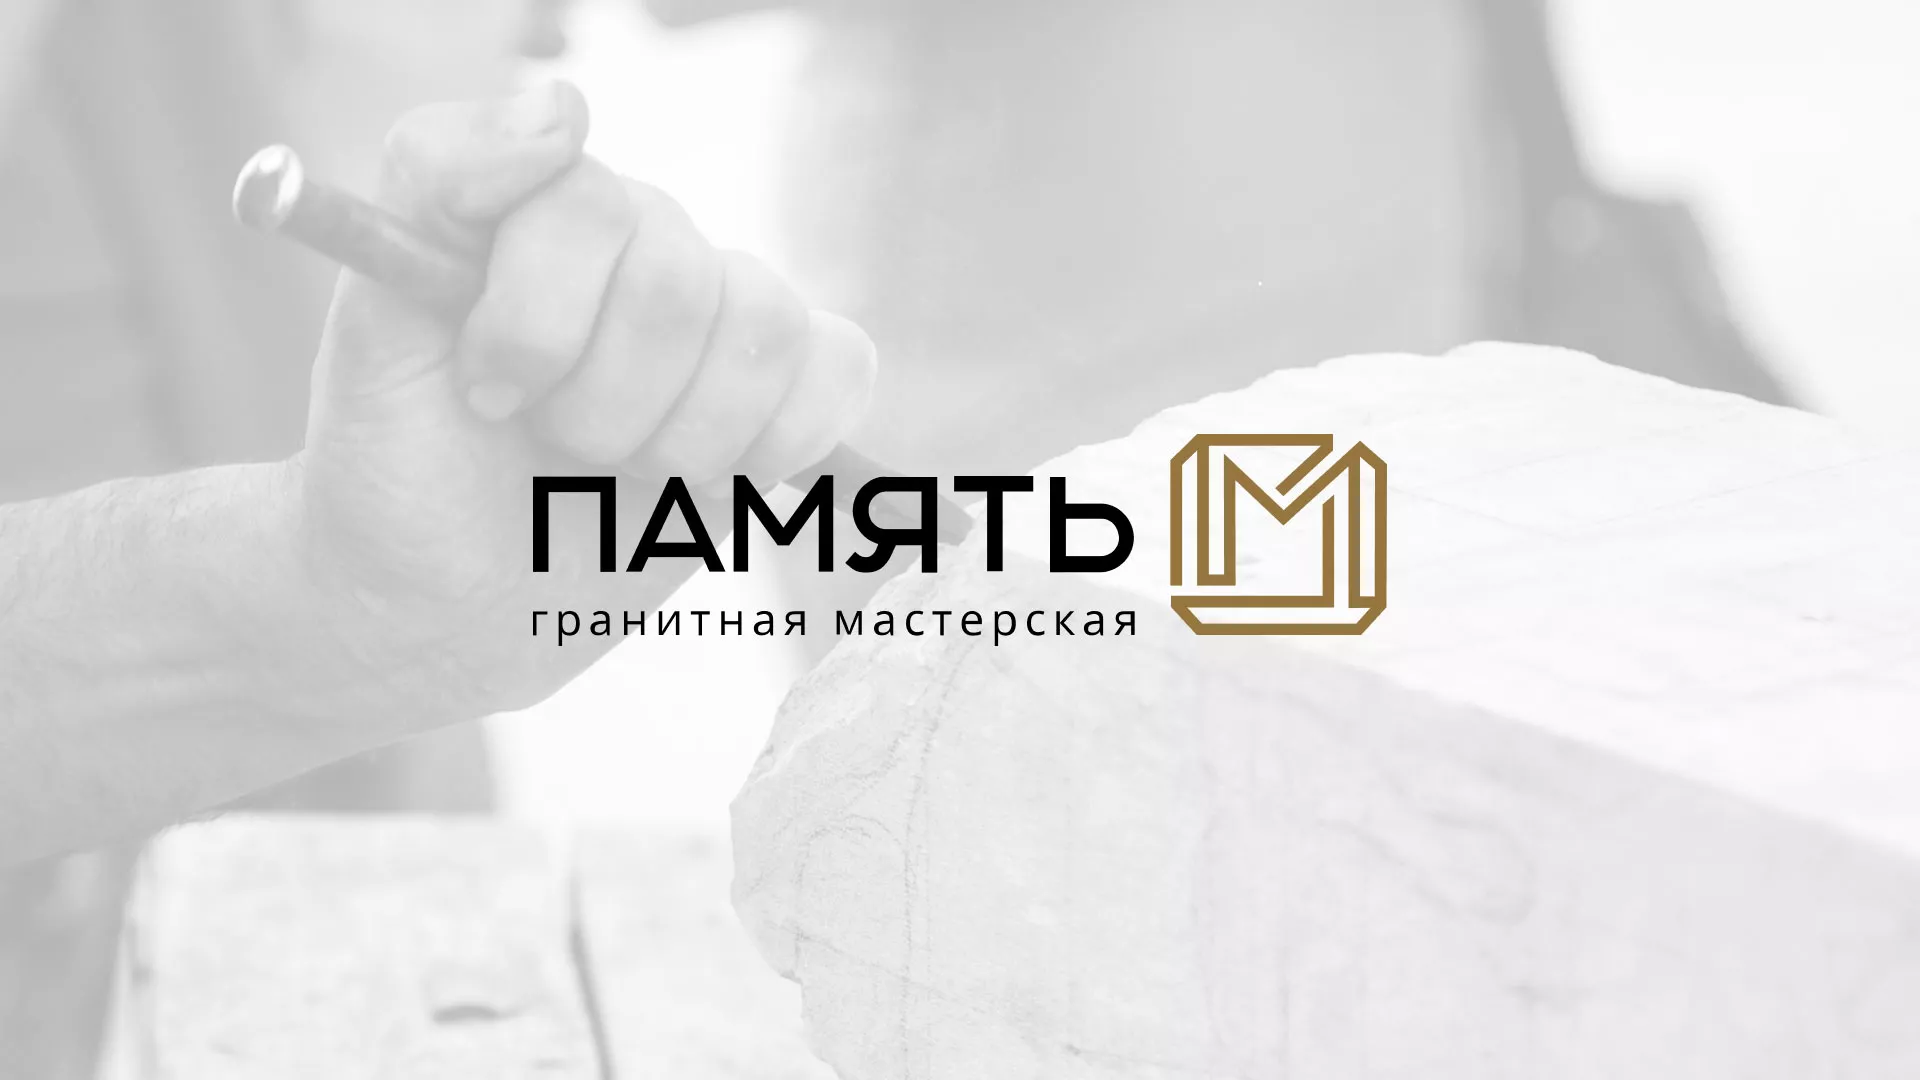 Разработка логотипа и сайта компании «Память-М» в Краснодаре